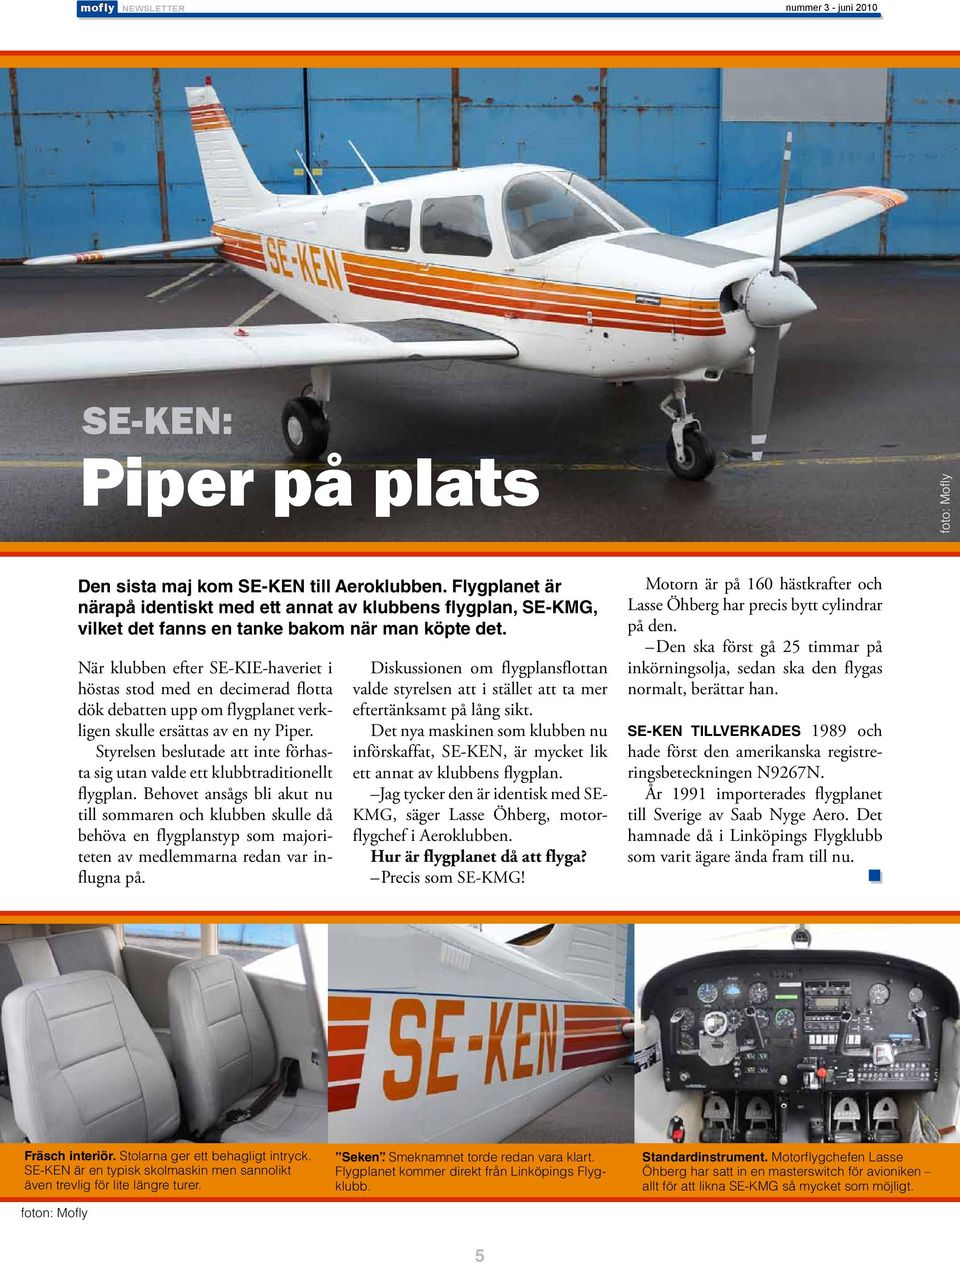 När klubben efter SE-KIE-haveriet i höstas stod med en decimerad flotta dök debatten upp om flygplanet verkligen skulle ersättas av en ny Piper.